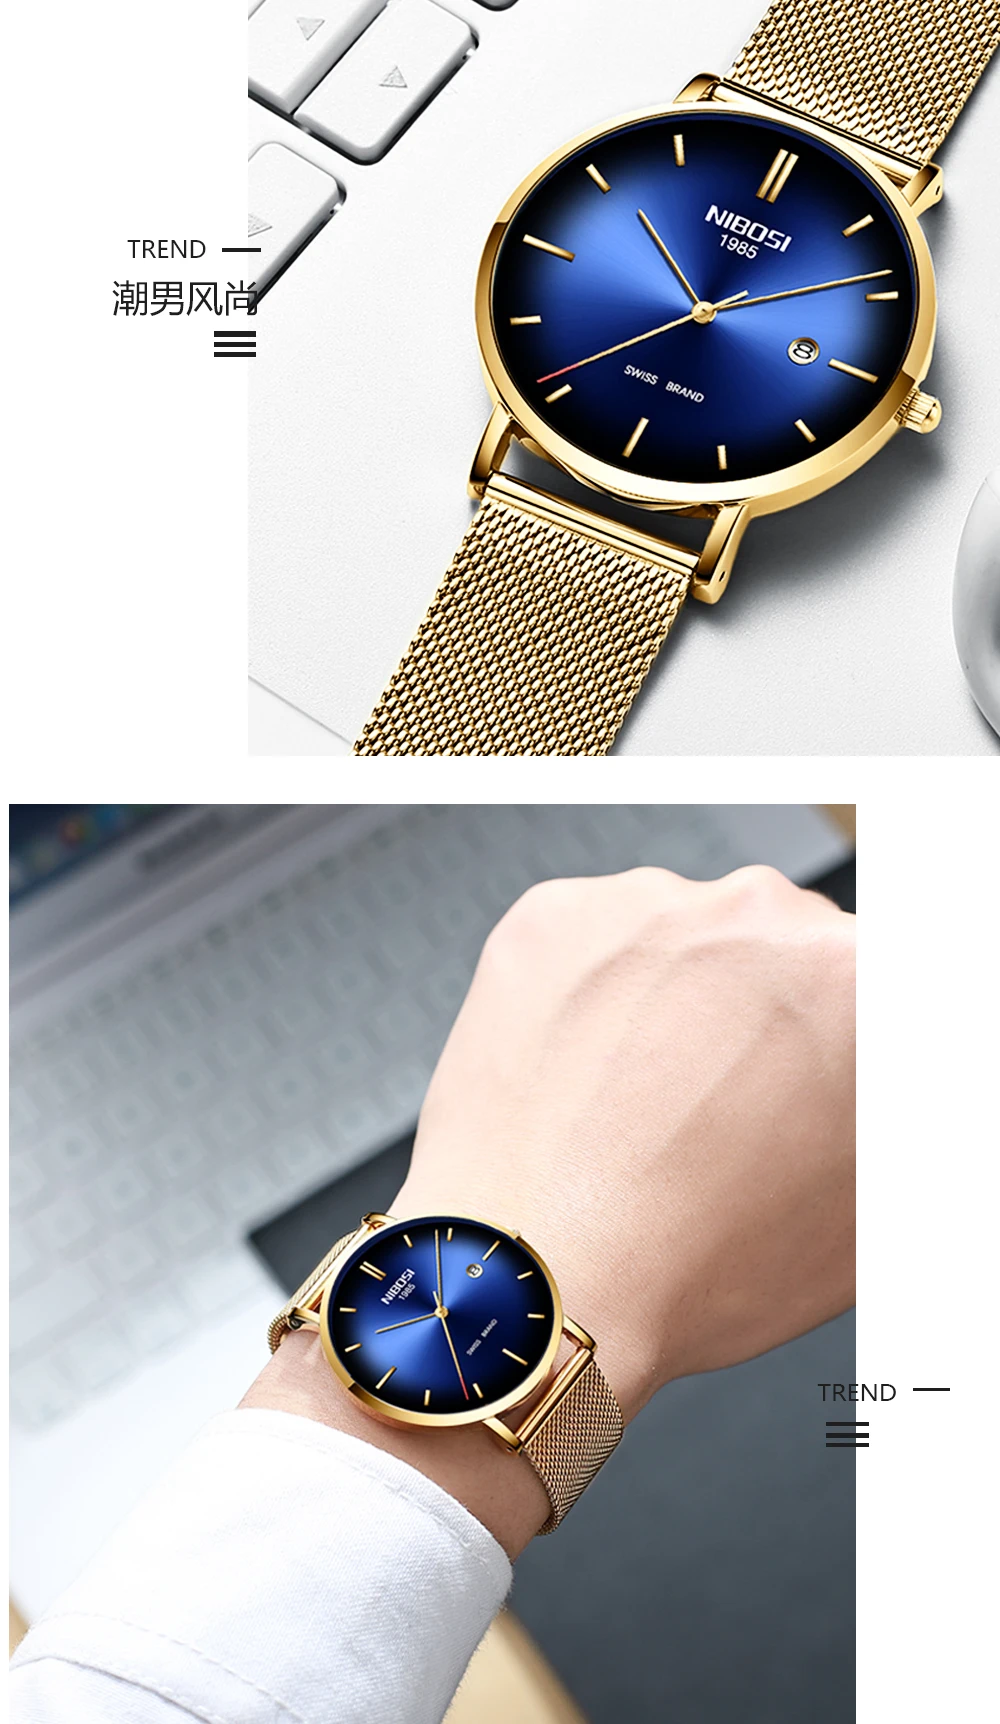 NIBOSI Топ бренд класса люкс часы Модные мужские кварцевые часы для мужчин стальной сетчатый ремешок бизнес водонепроницаемые спортивные часы Relogio Masculino